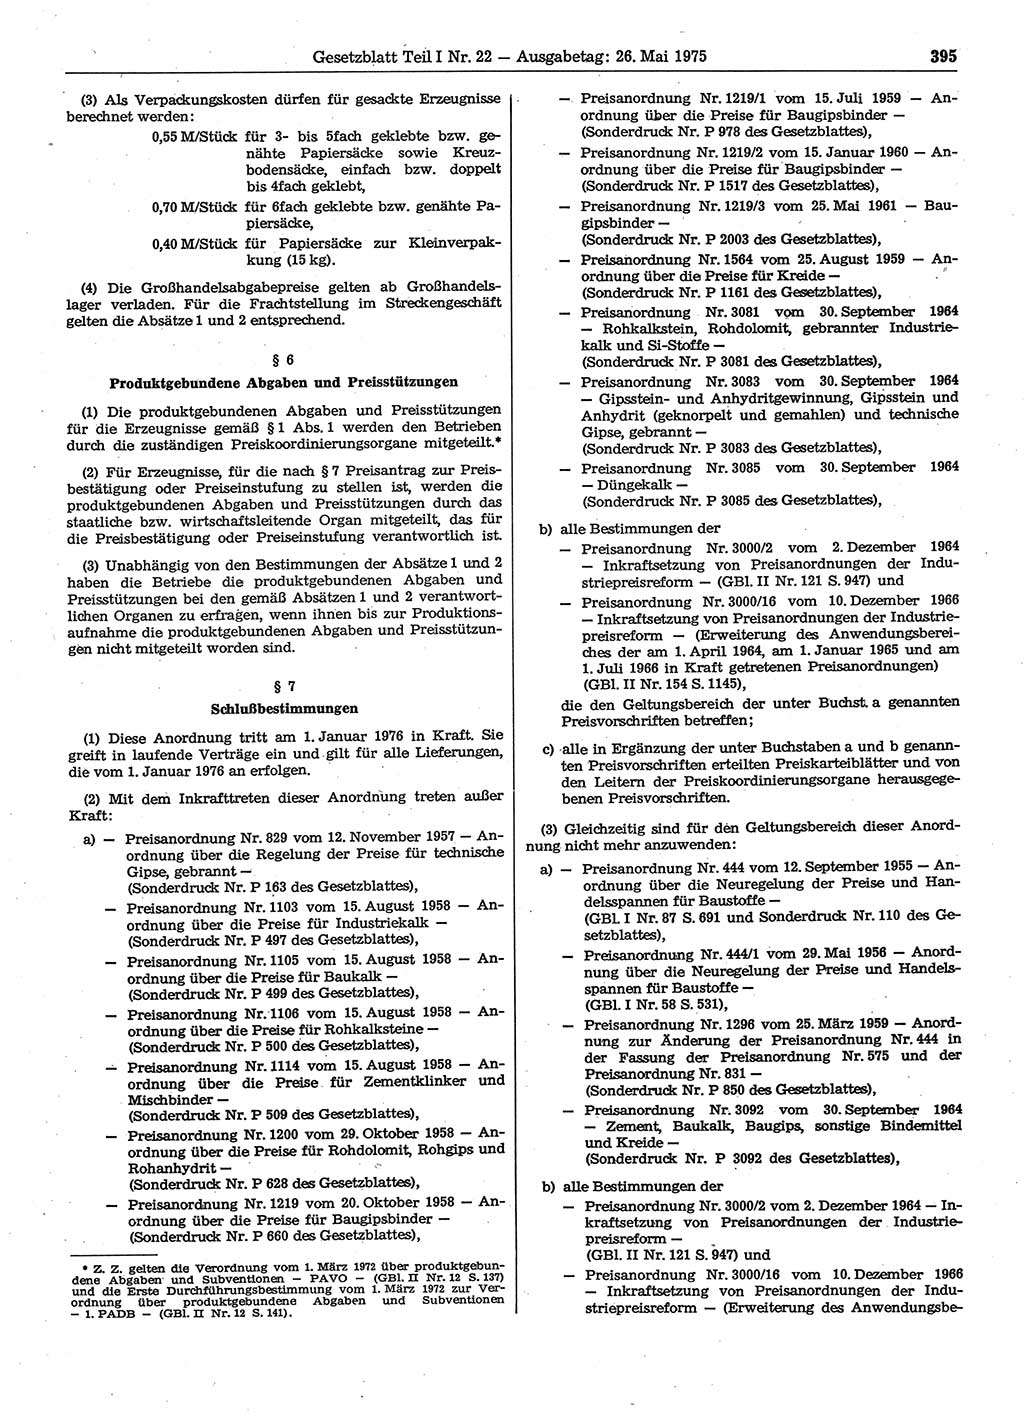 Gesetzblatt (GBl.) der Deutschen Demokratischen Republik (DDR) Teil Ⅰ 1975, Seite 395 (GBl. DDR Ⅰ 1975, S. 395)